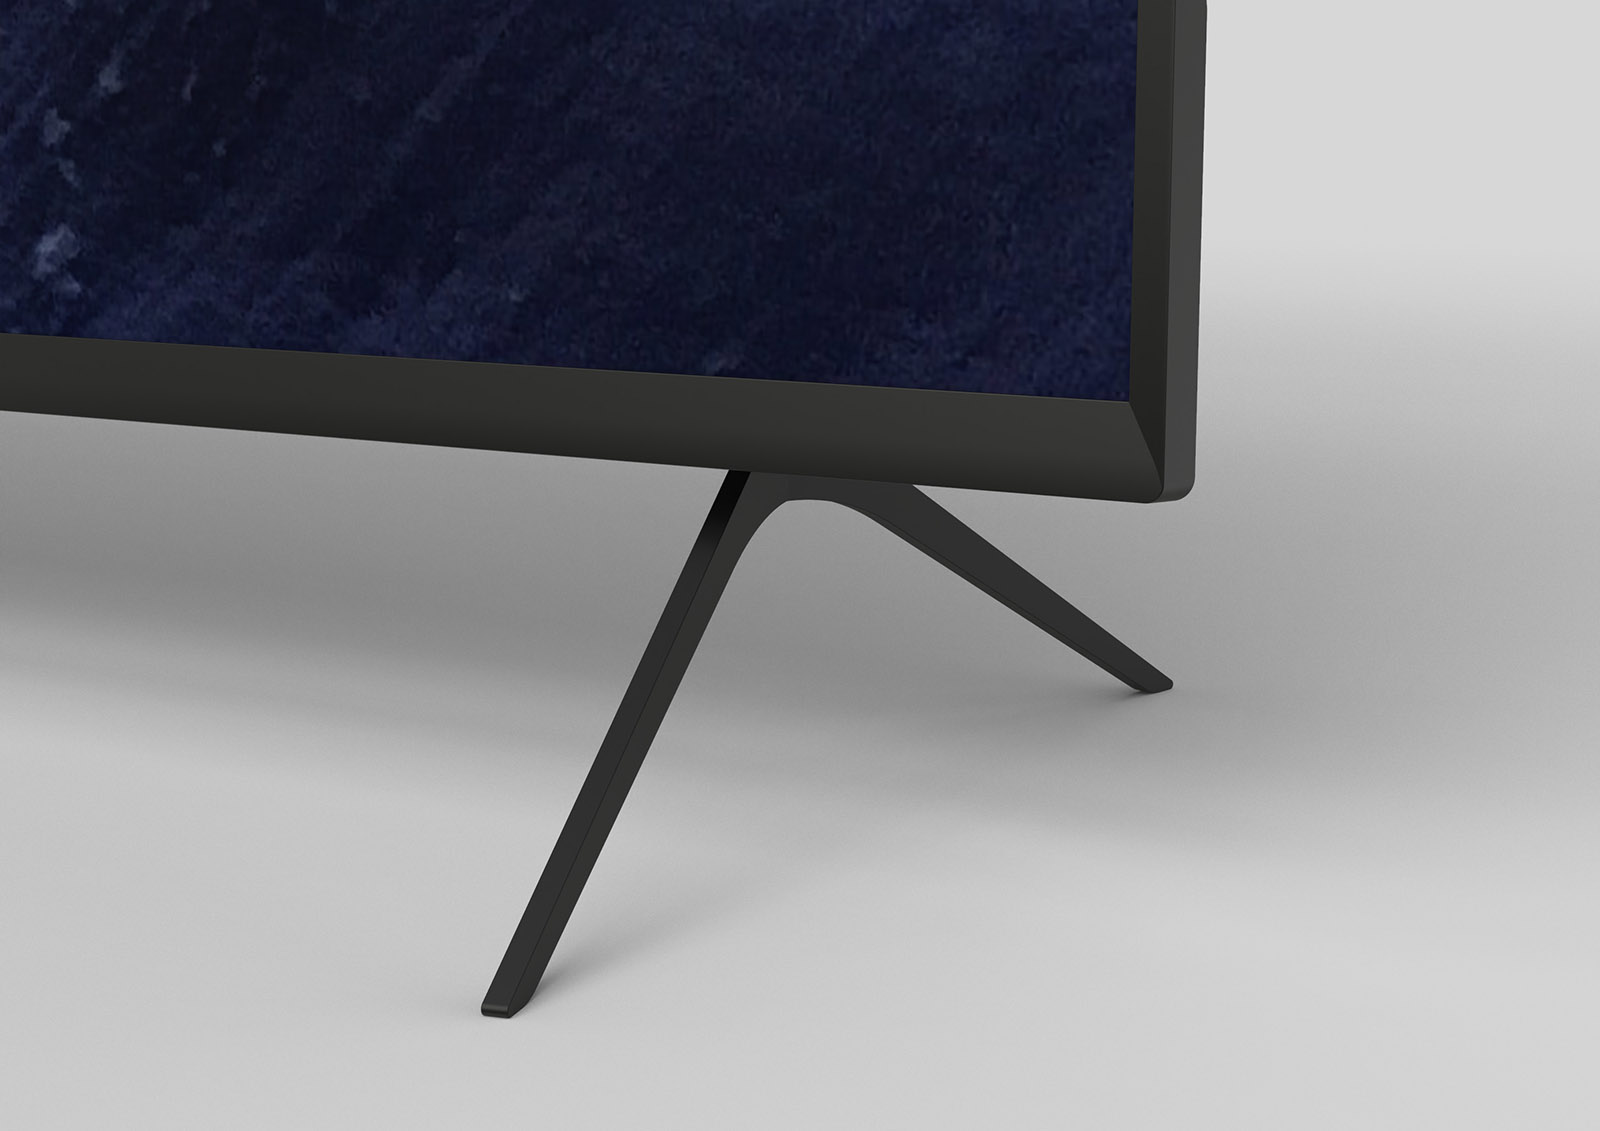 KIVI показала образцы дизайна новой линейки телевизоров 2021 года до официальной презентации